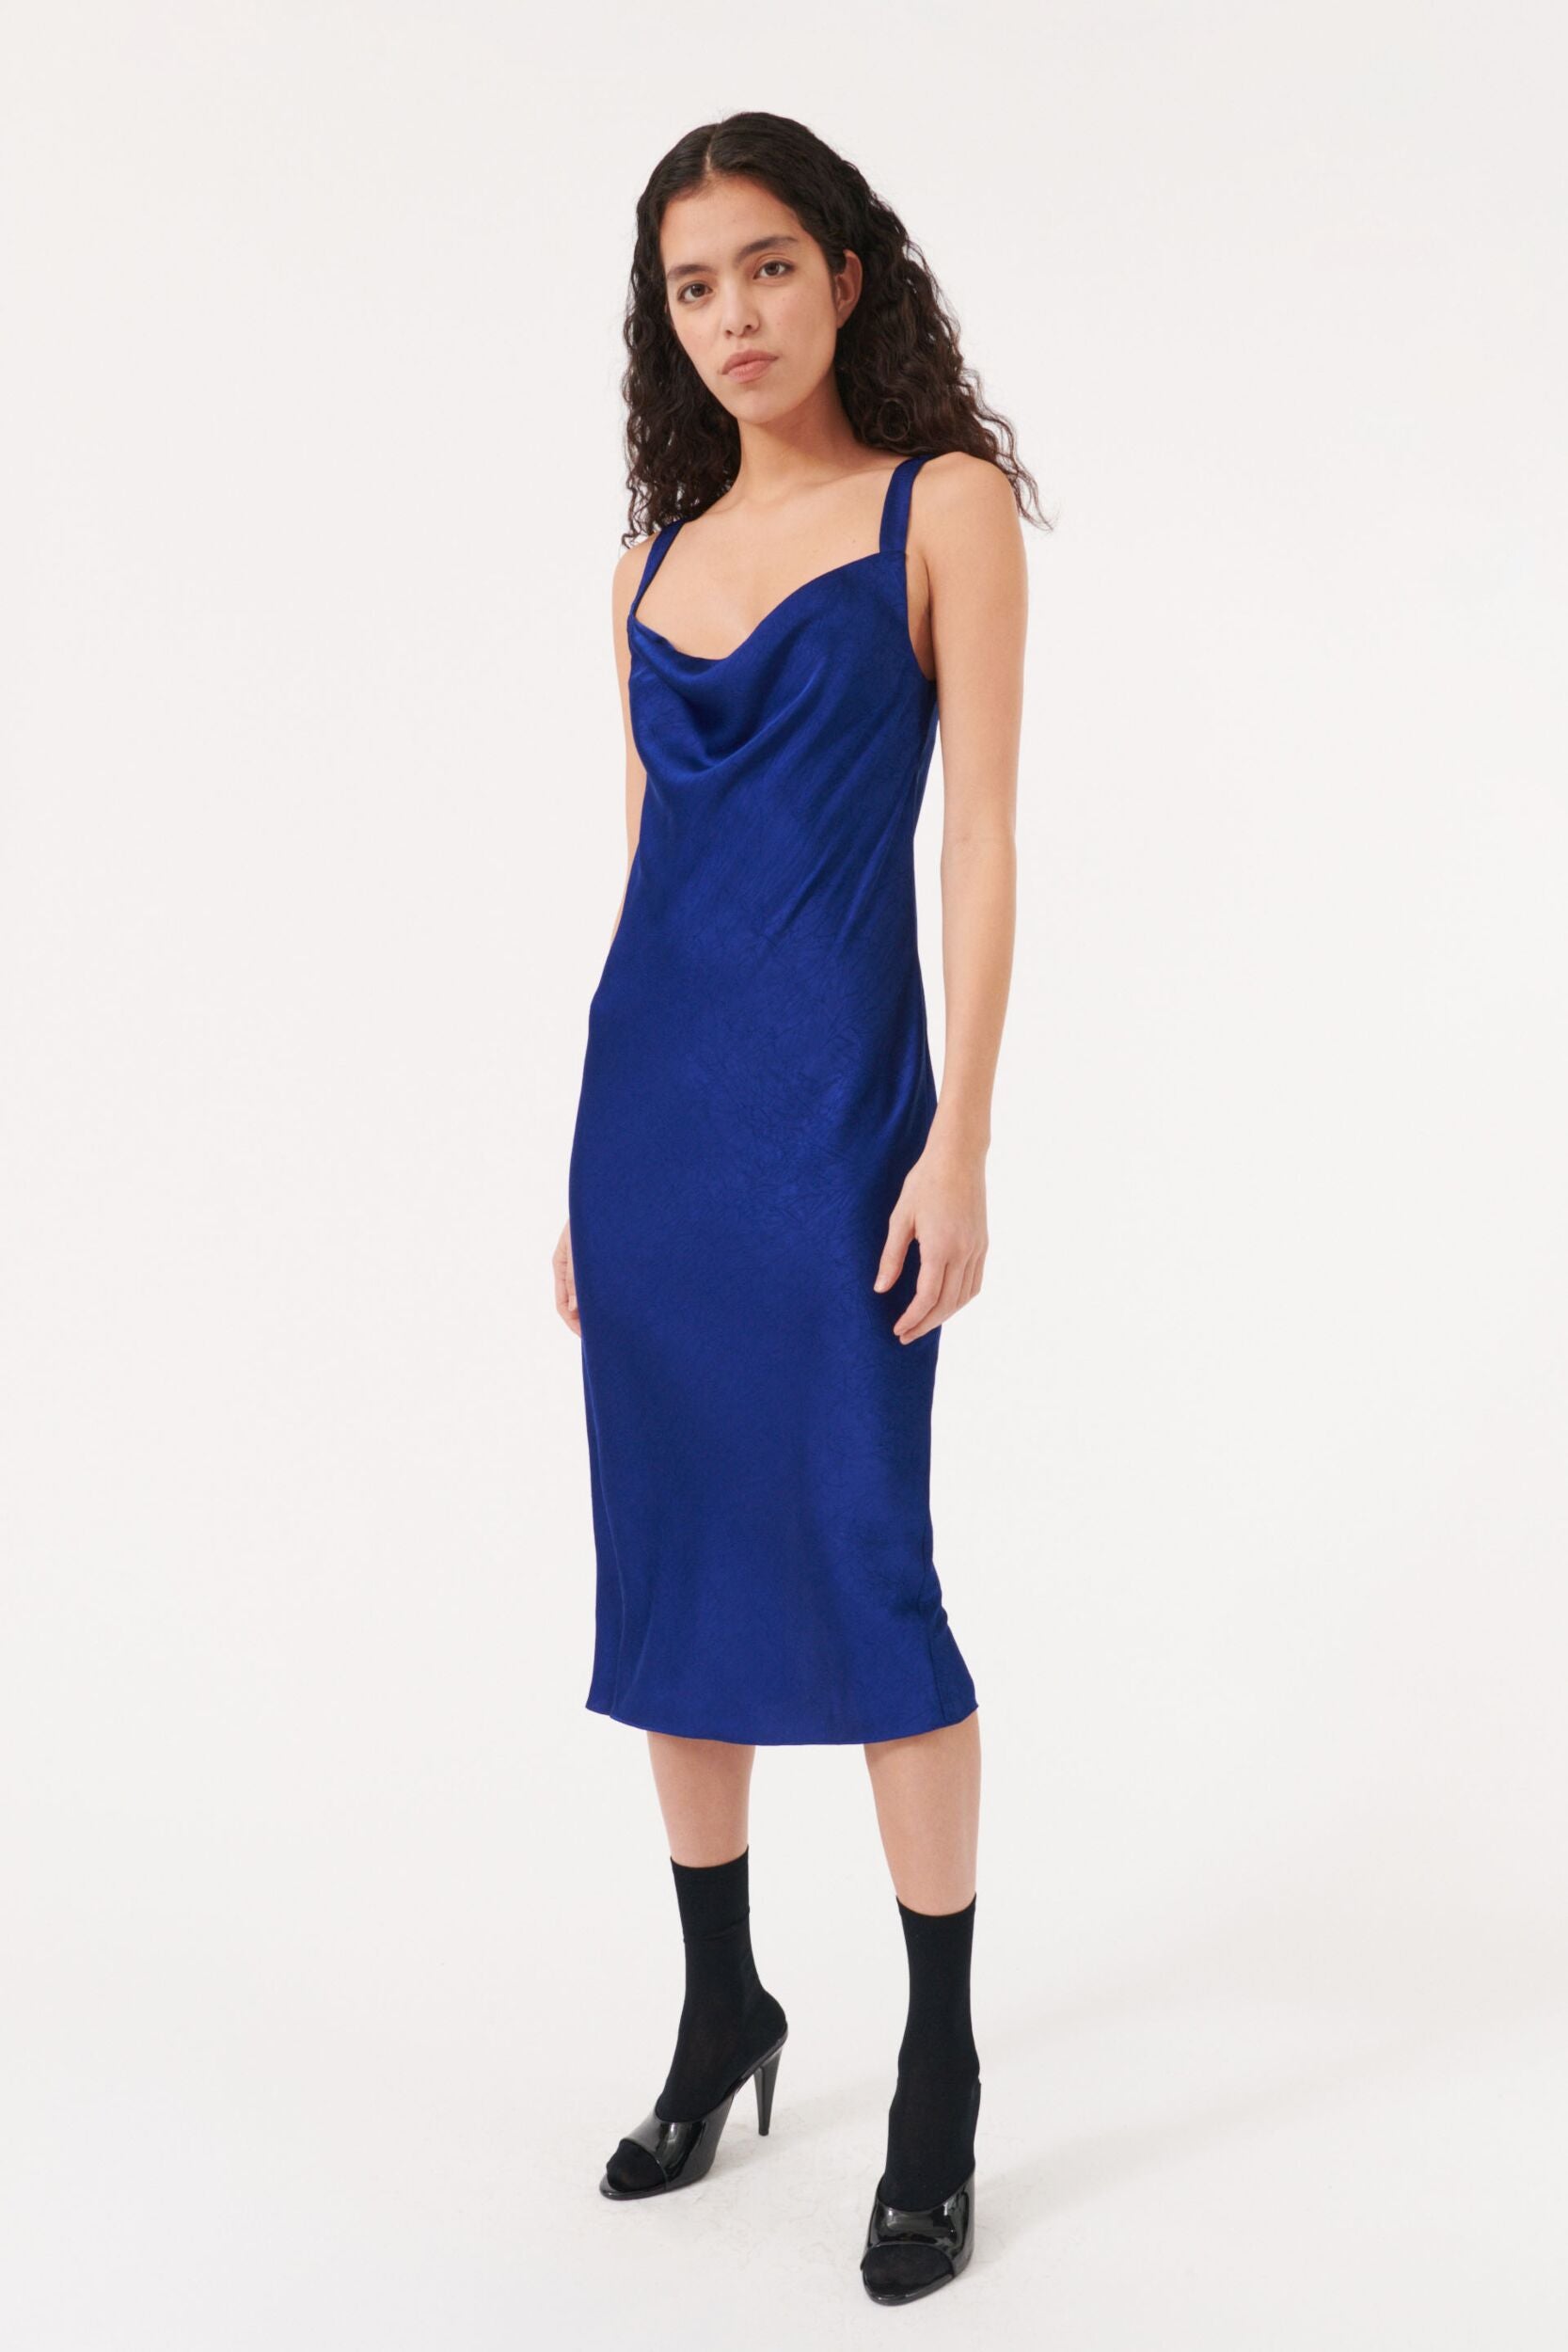 Baum -  Agamora Dress Bellwether Blue